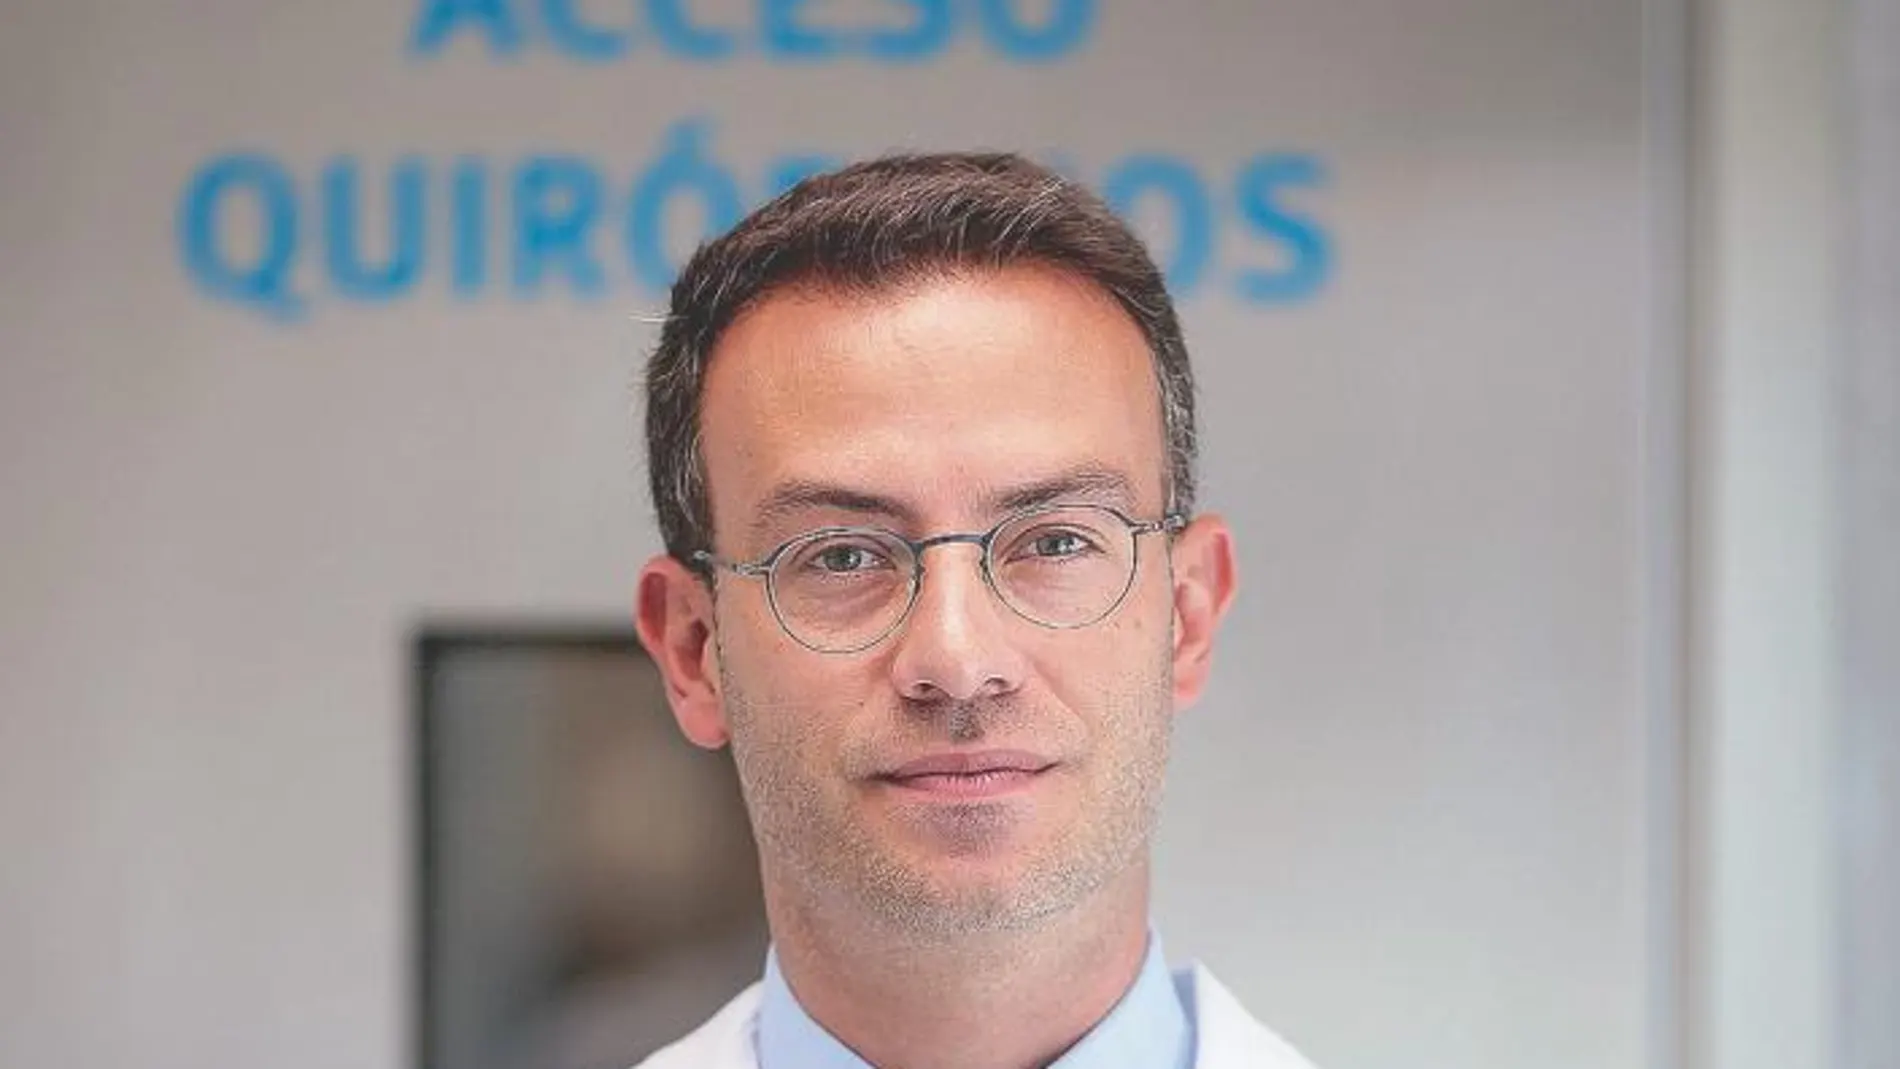 Dr. Alessandro Oliverio / Cirugía Plástica, Estética y Reparadora, Hospital La Luz en Madrid, Grupo Quirónsalud